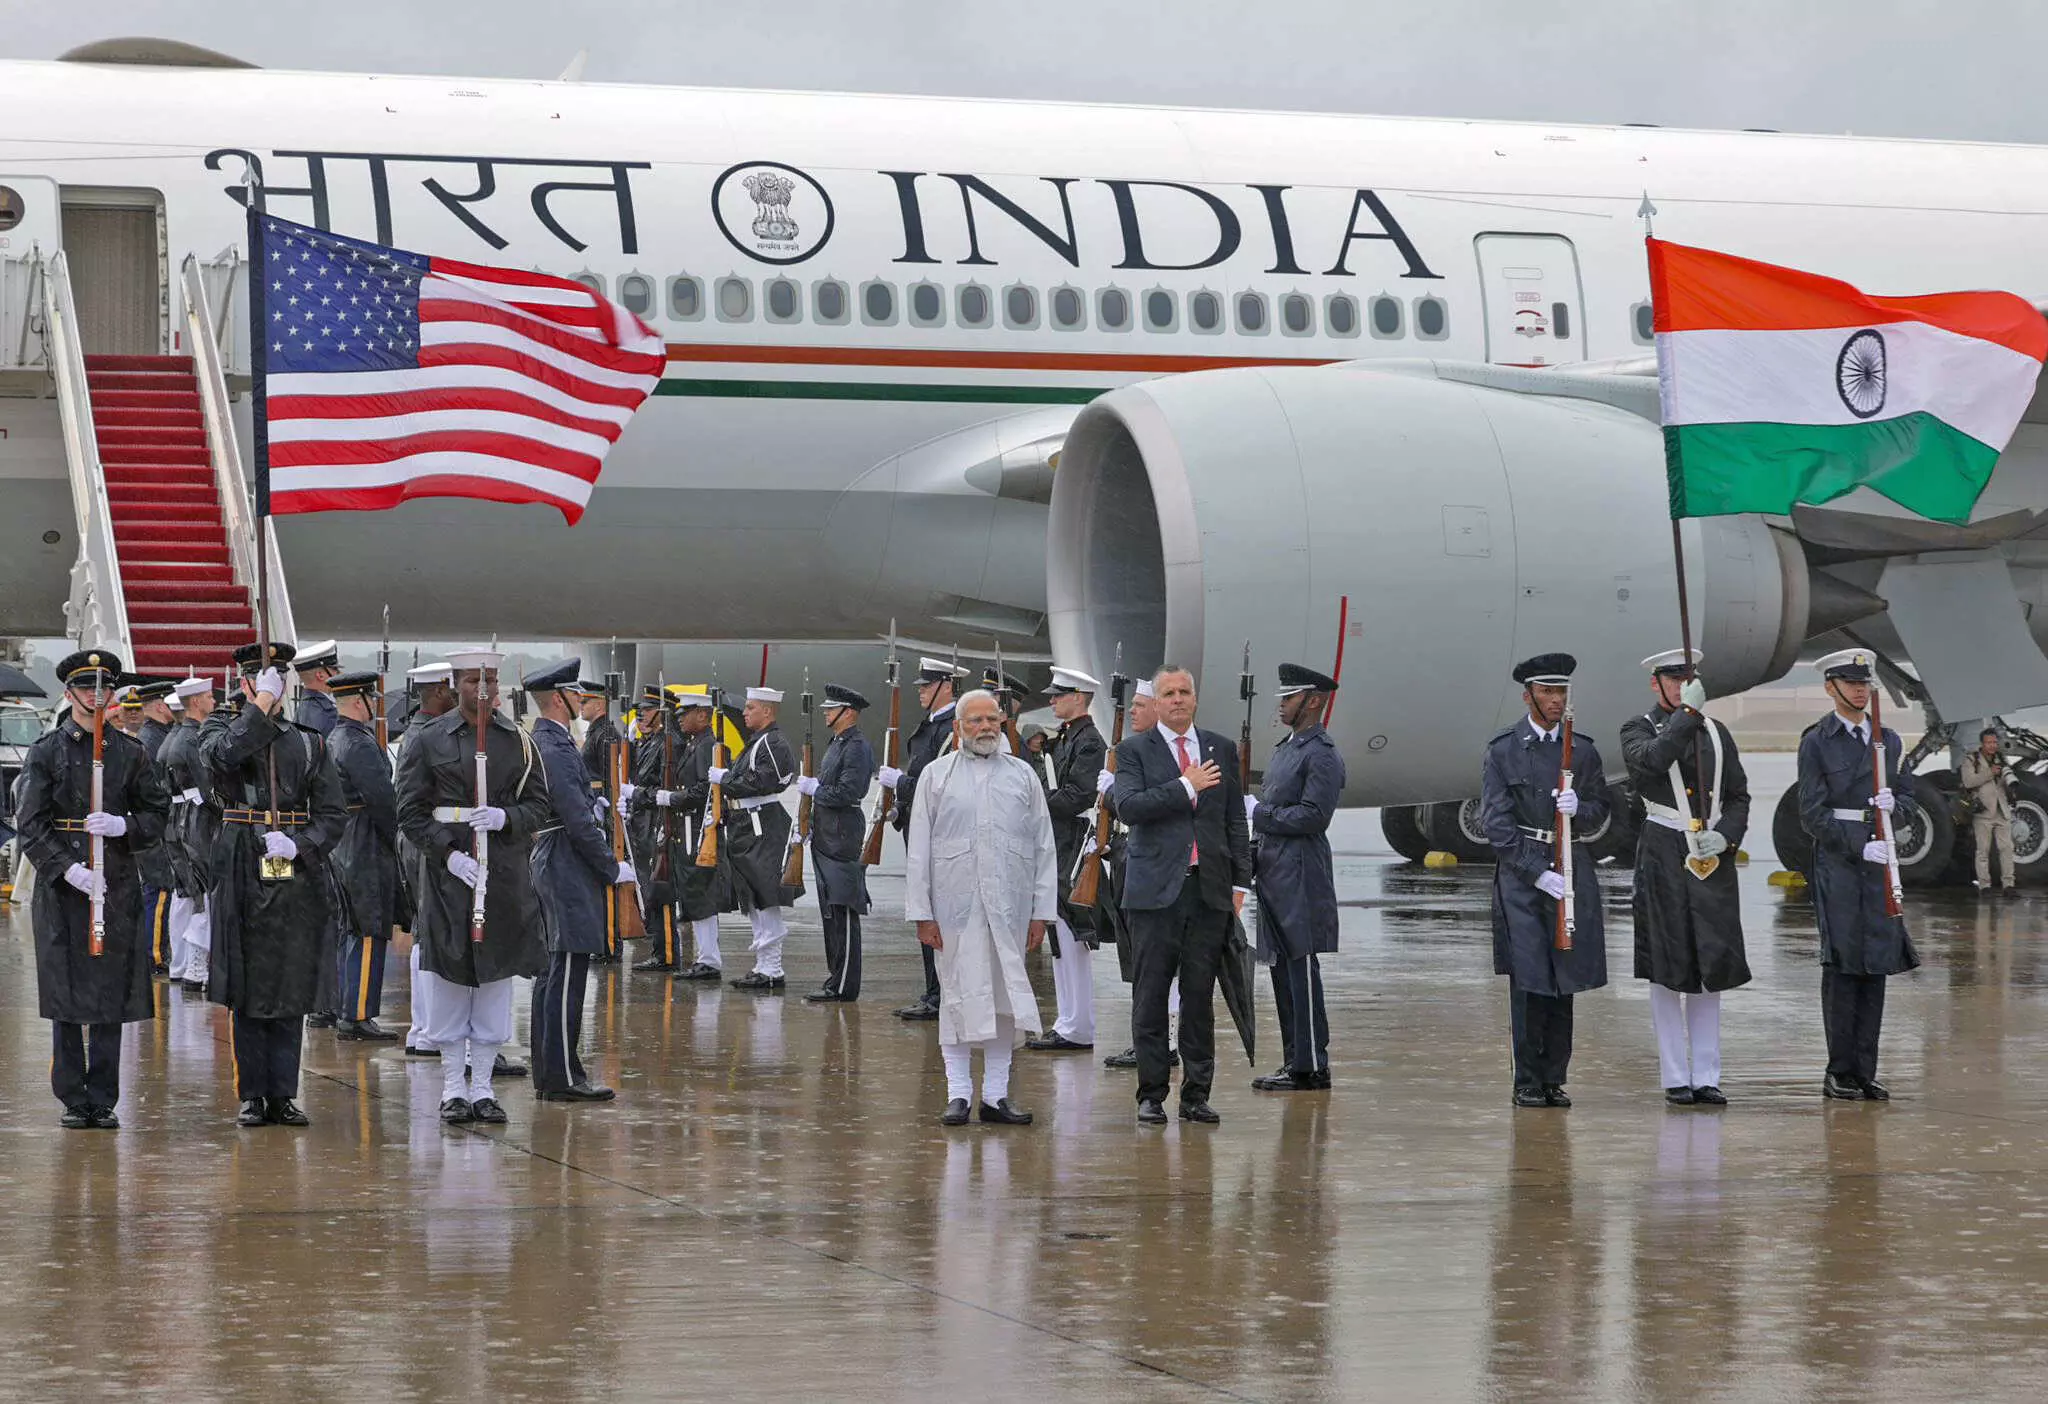 अमेरिका में राष्ट्रगान के सम्मान में भीगते रहे PM मोदी, जनता बोली- मोदी से राहुल, केजरीवाल सीखे राष्ट्र सम्मान